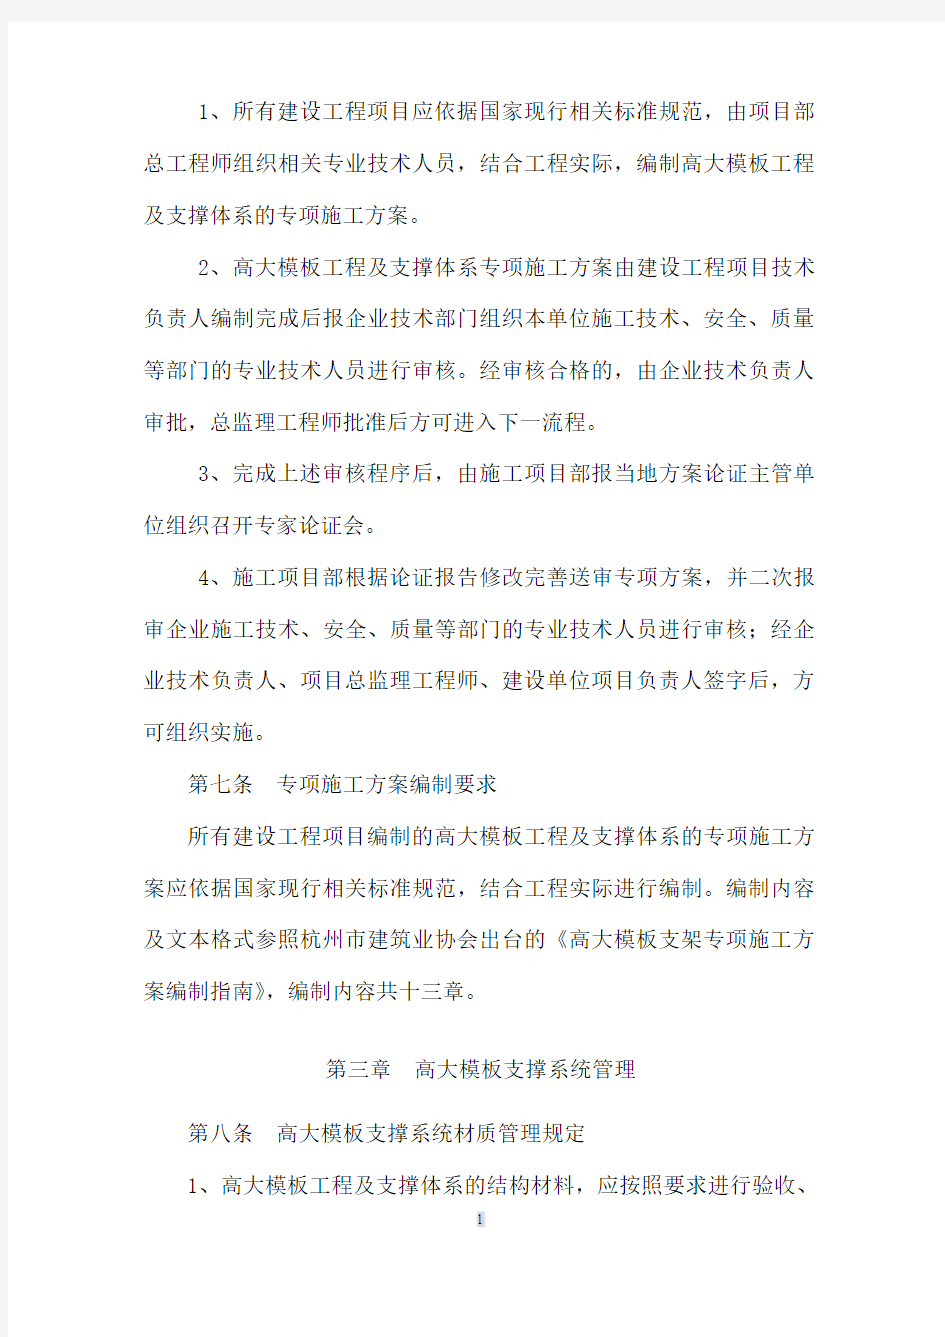 杭州市建设工程高大模板支撑系统施工安全监督管理规定20113224173204